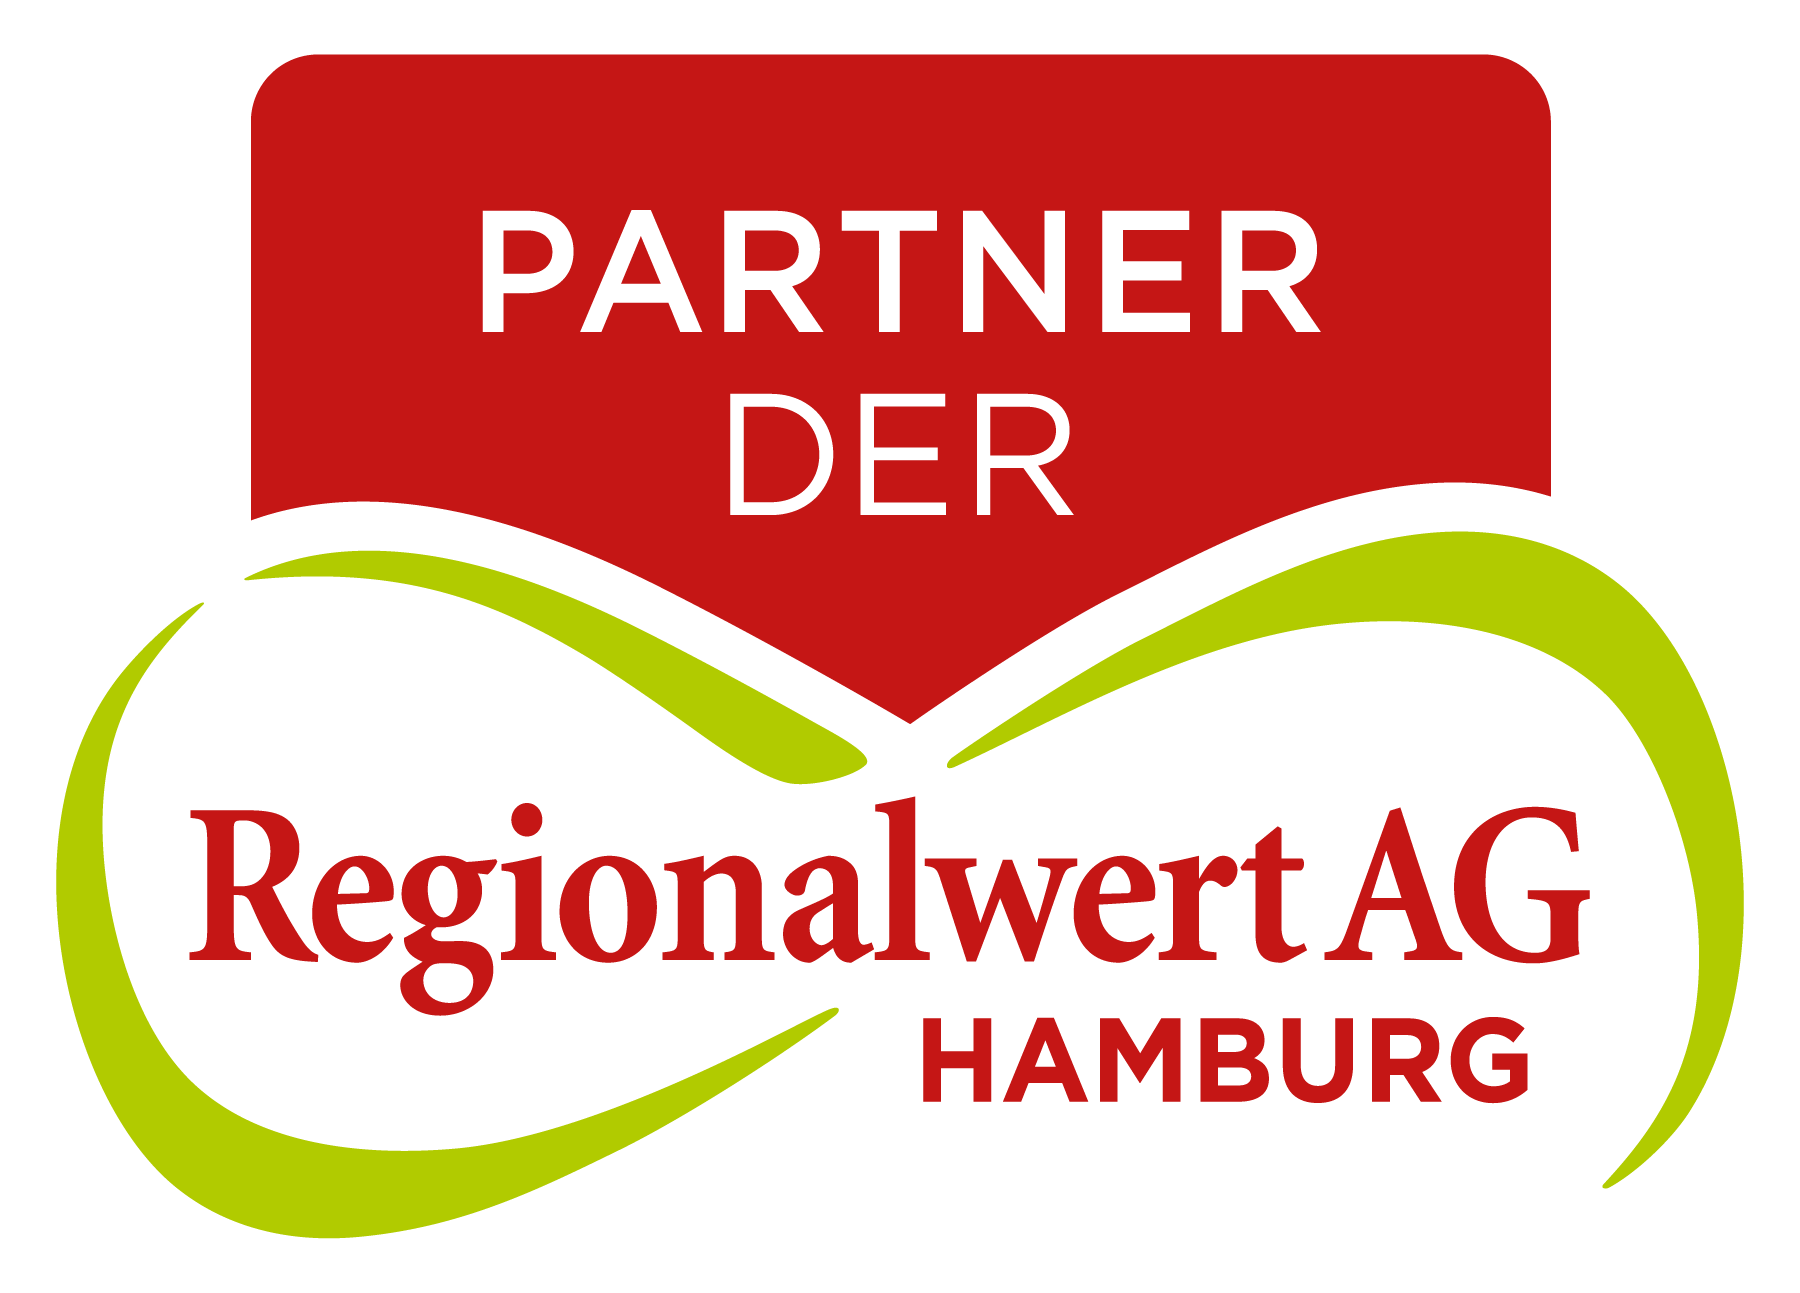 Regionalwert Hamburg